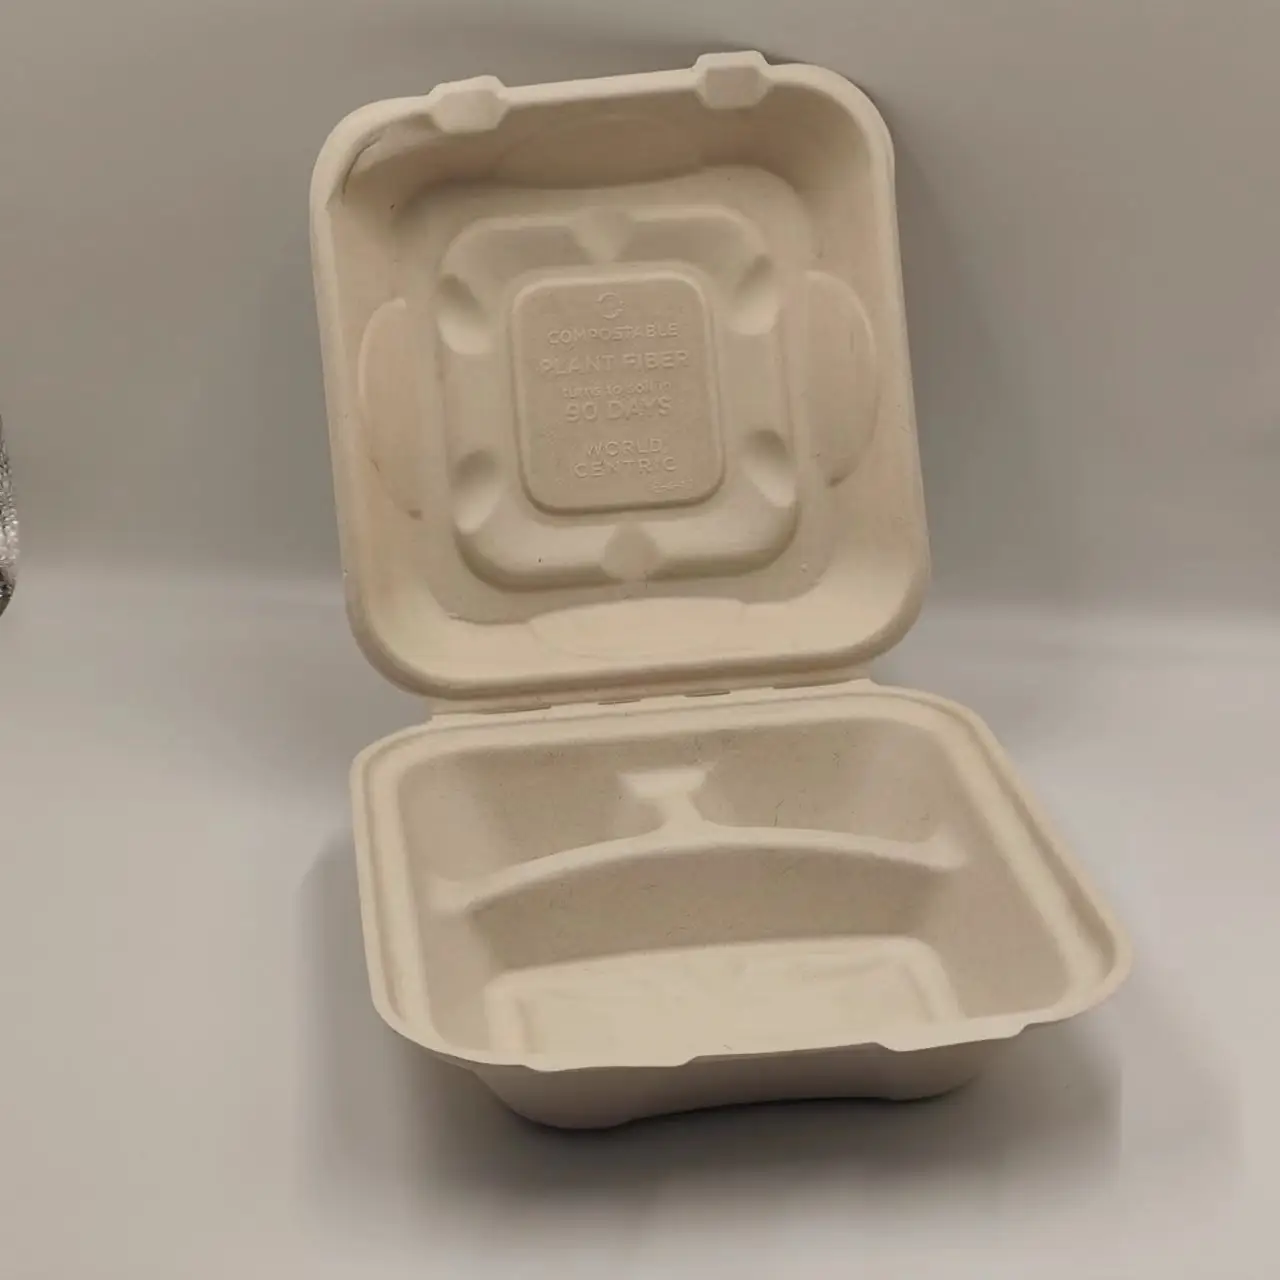 Lancheira Bento à prova de vazamento com 3 compartimentos personalizados do fabricante, placas descartáveis biodegradáveis transparentes compostáveis na China